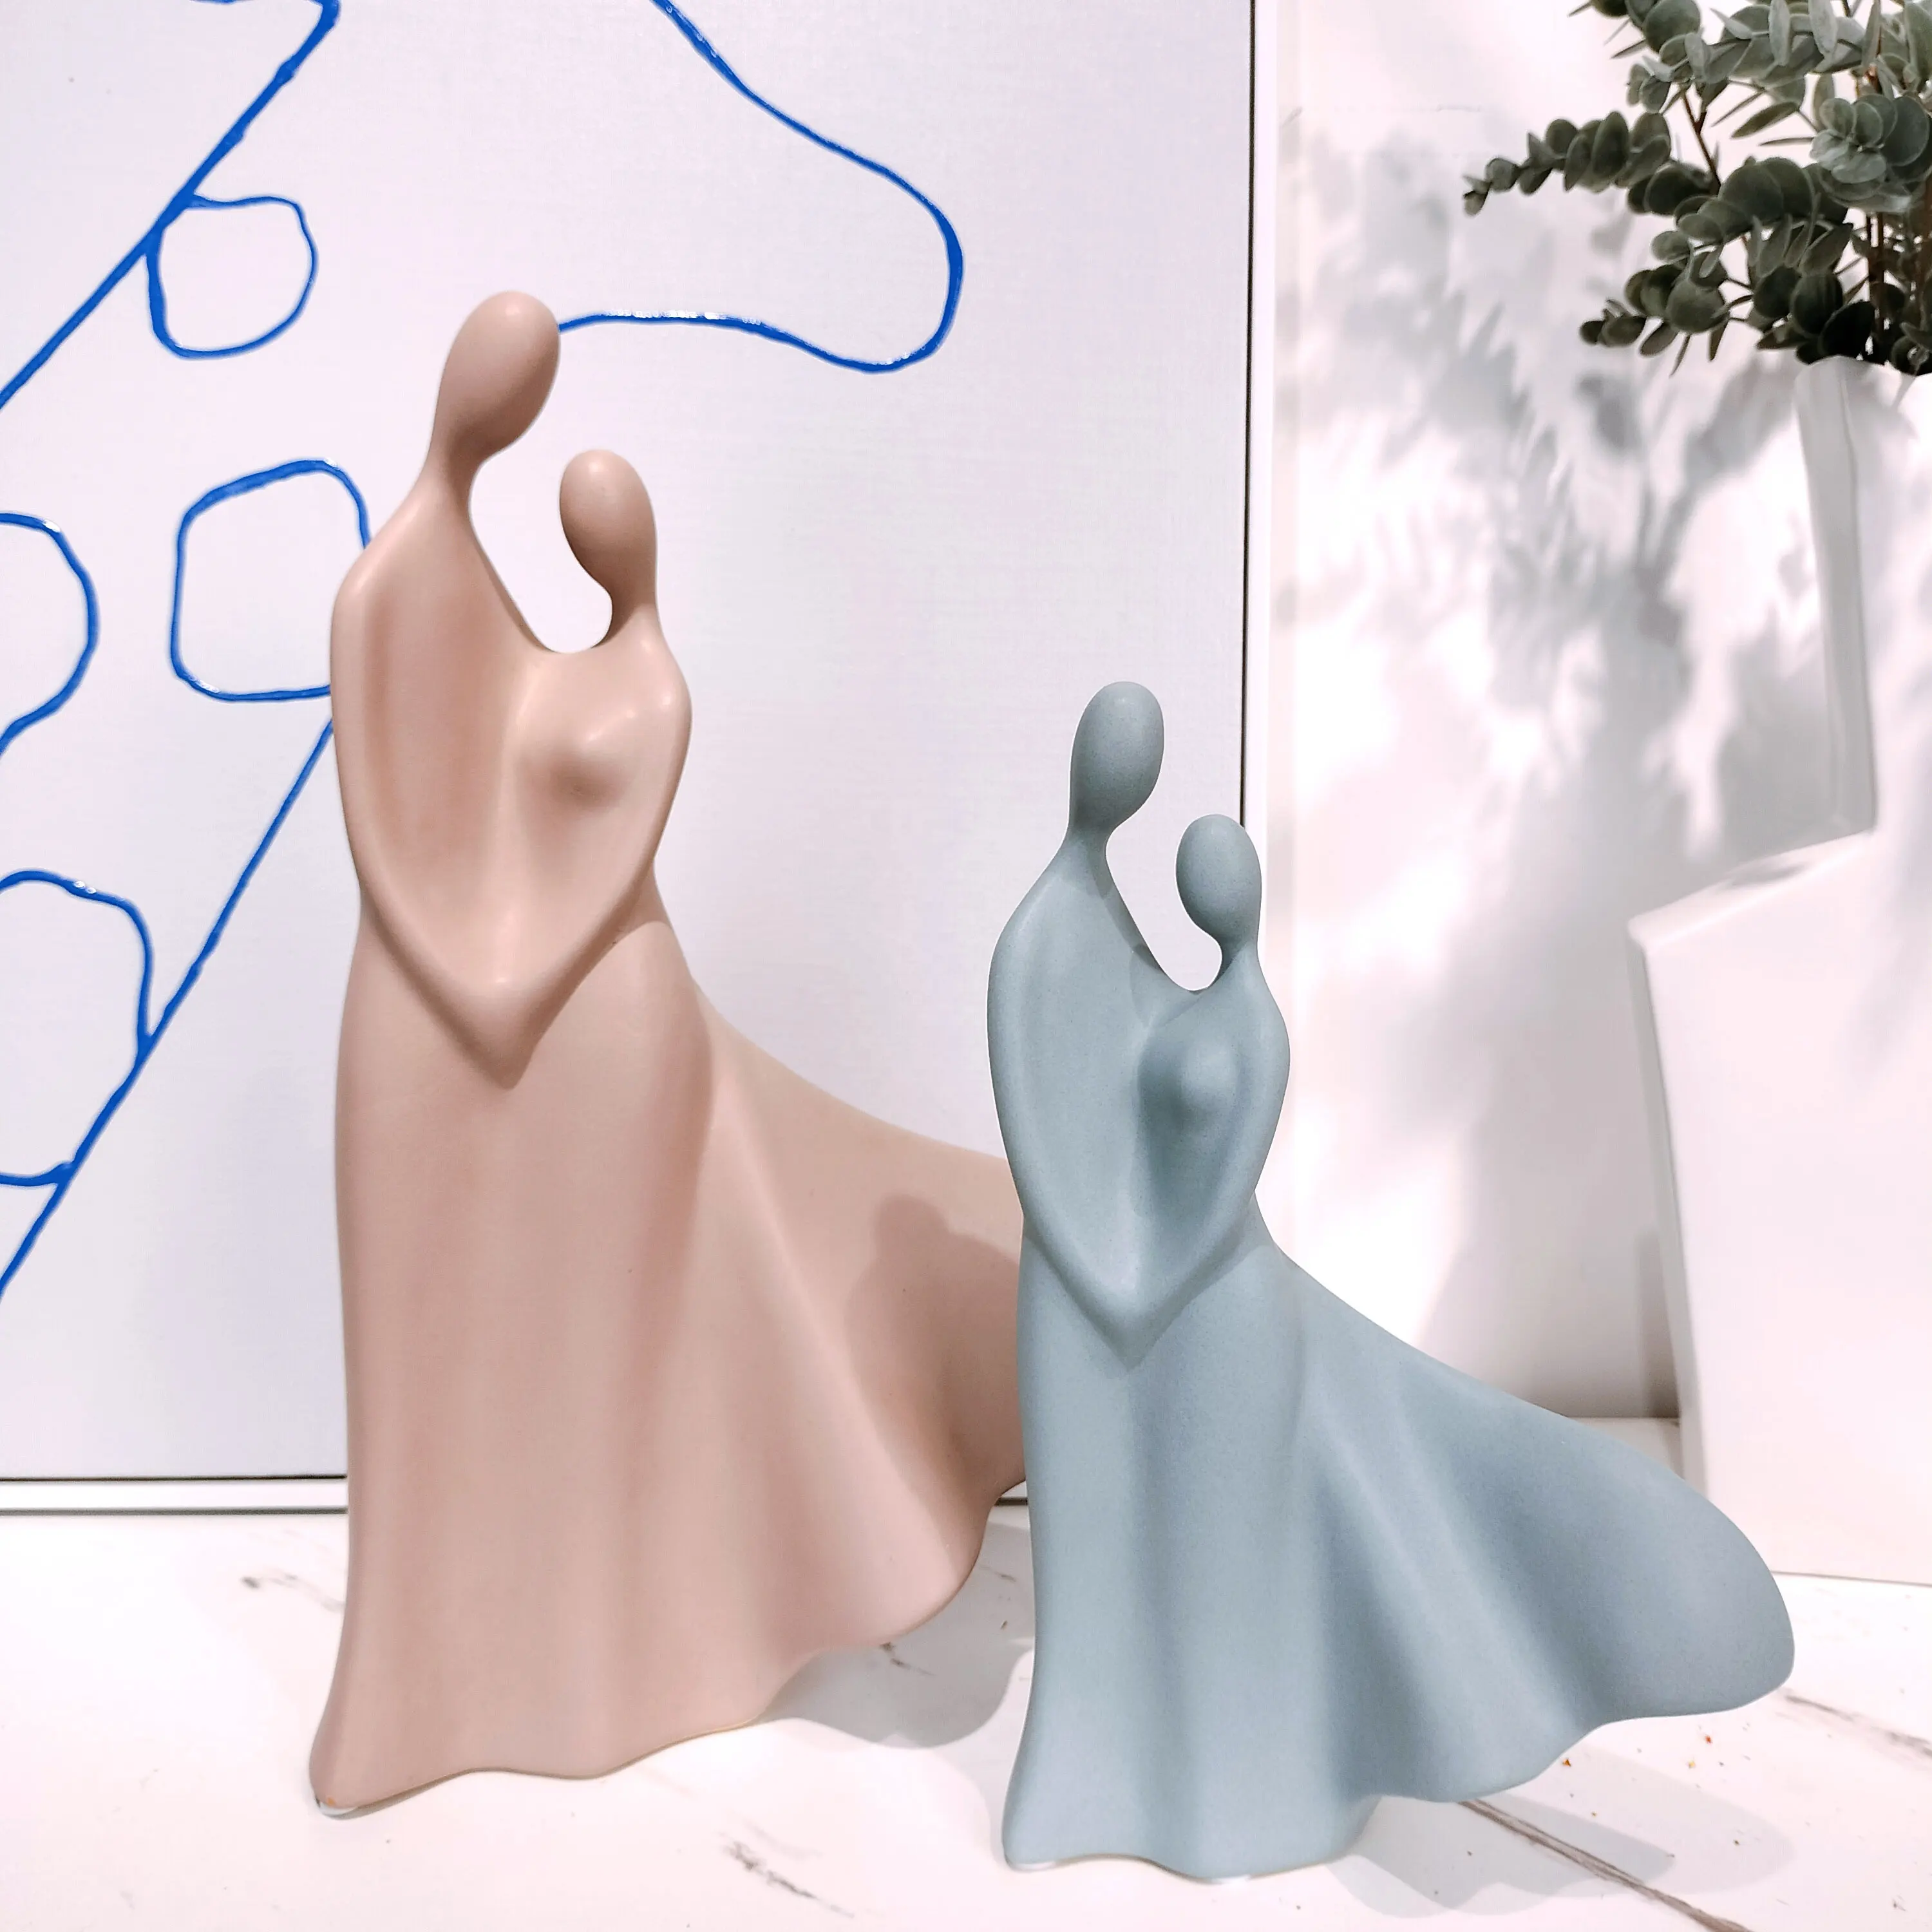 Fabrikdirektverkauf von handgefertigten Paarstatuen in moderner Kunst Design Keramik für Zuhause Luxus Dekozubehör